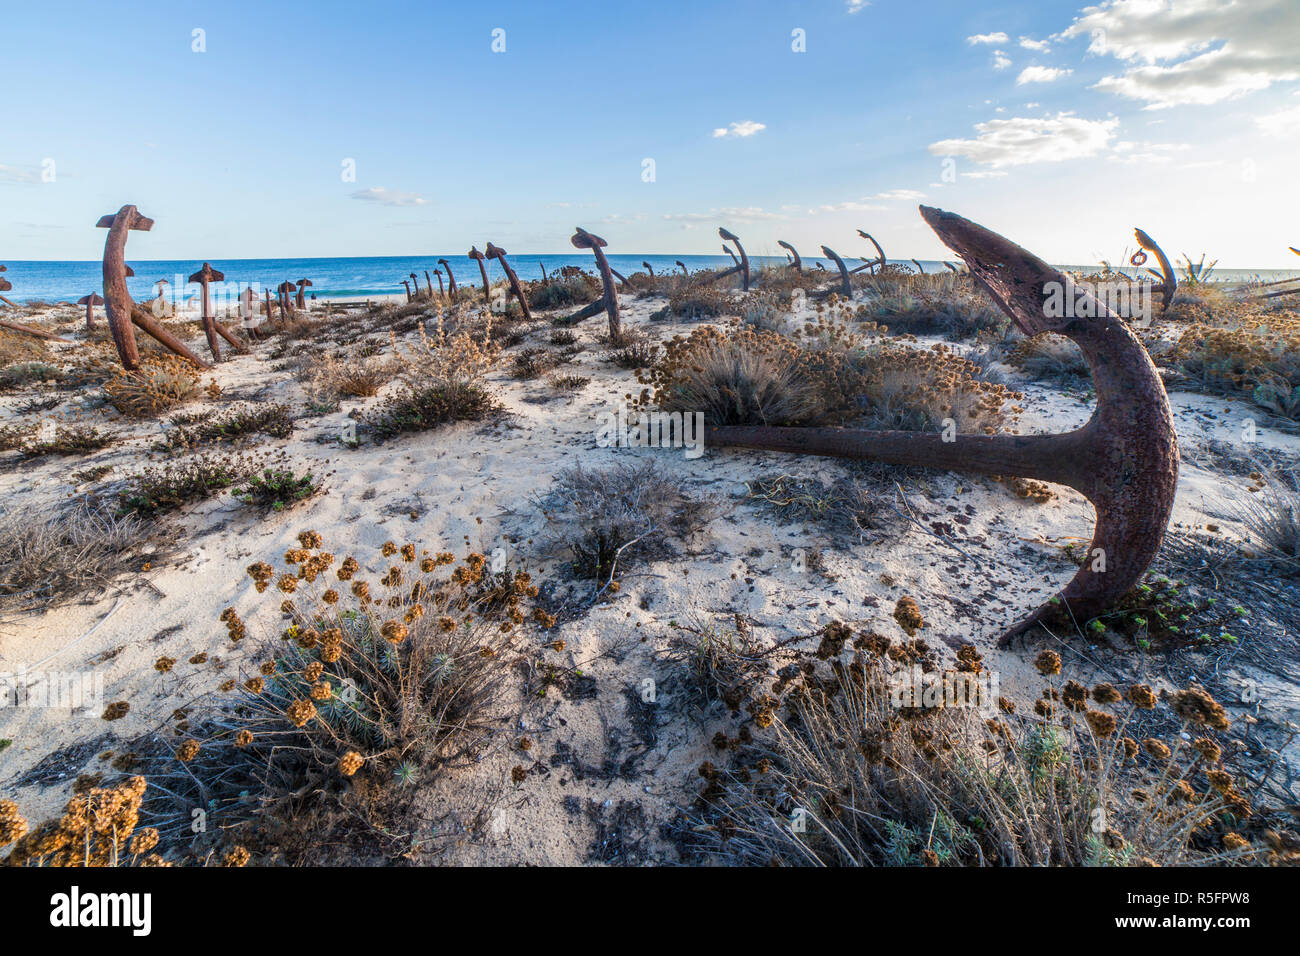 Friedhof von Anker. Denkmal zu den Toten Fischer der Thunfischindustrie in Portugal. Strand Praia do Barril, Santa Luzia, Algarve Stockfoto